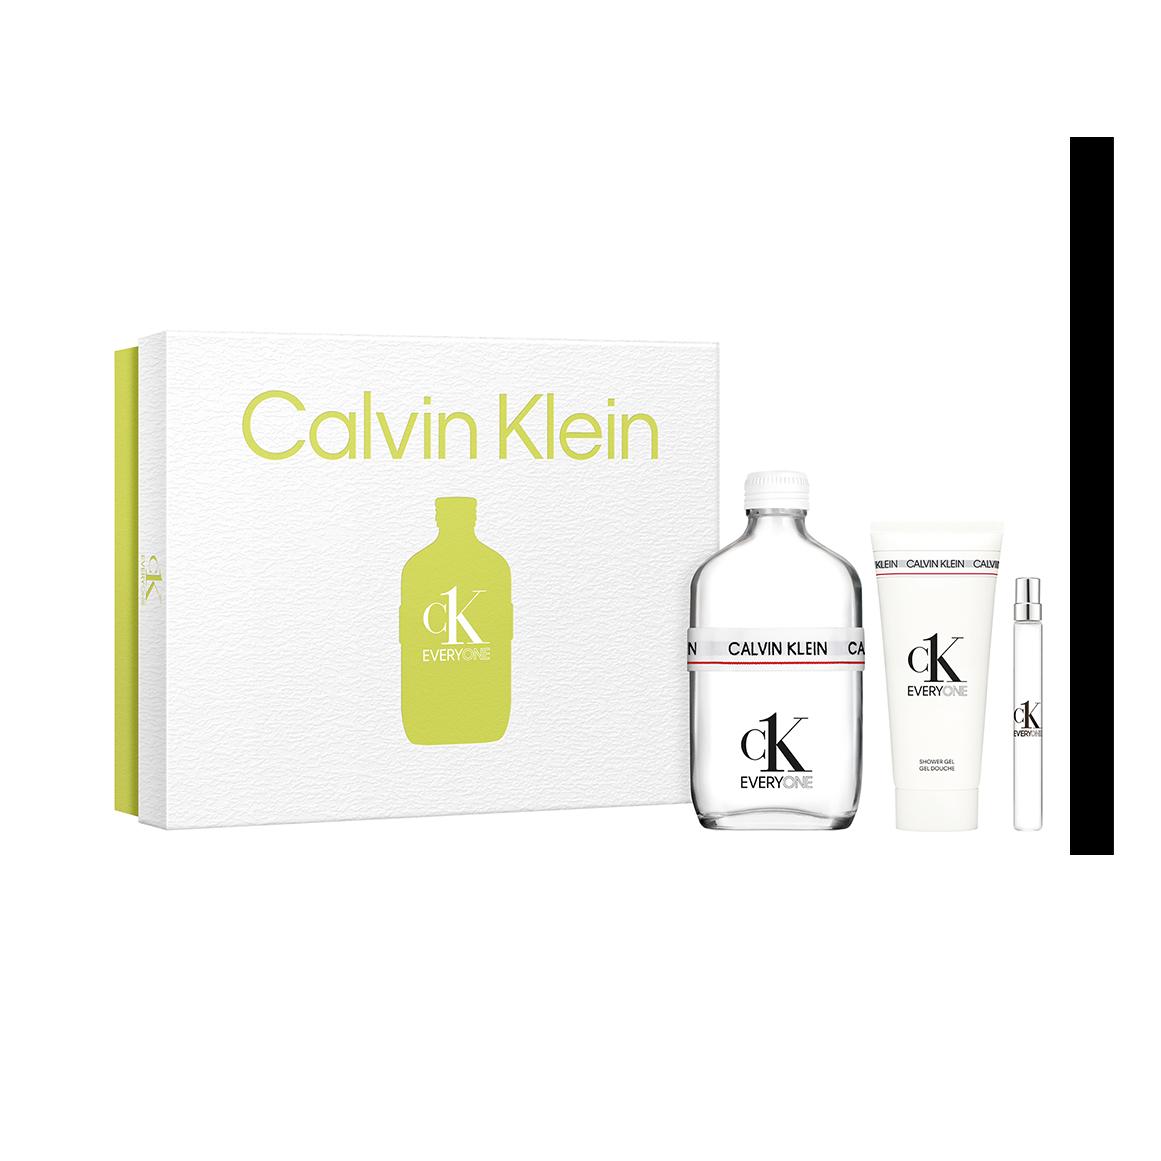 Buy Calvin Klein CK One 200ml 2 Piece Set Online at Chemist Warehouse®